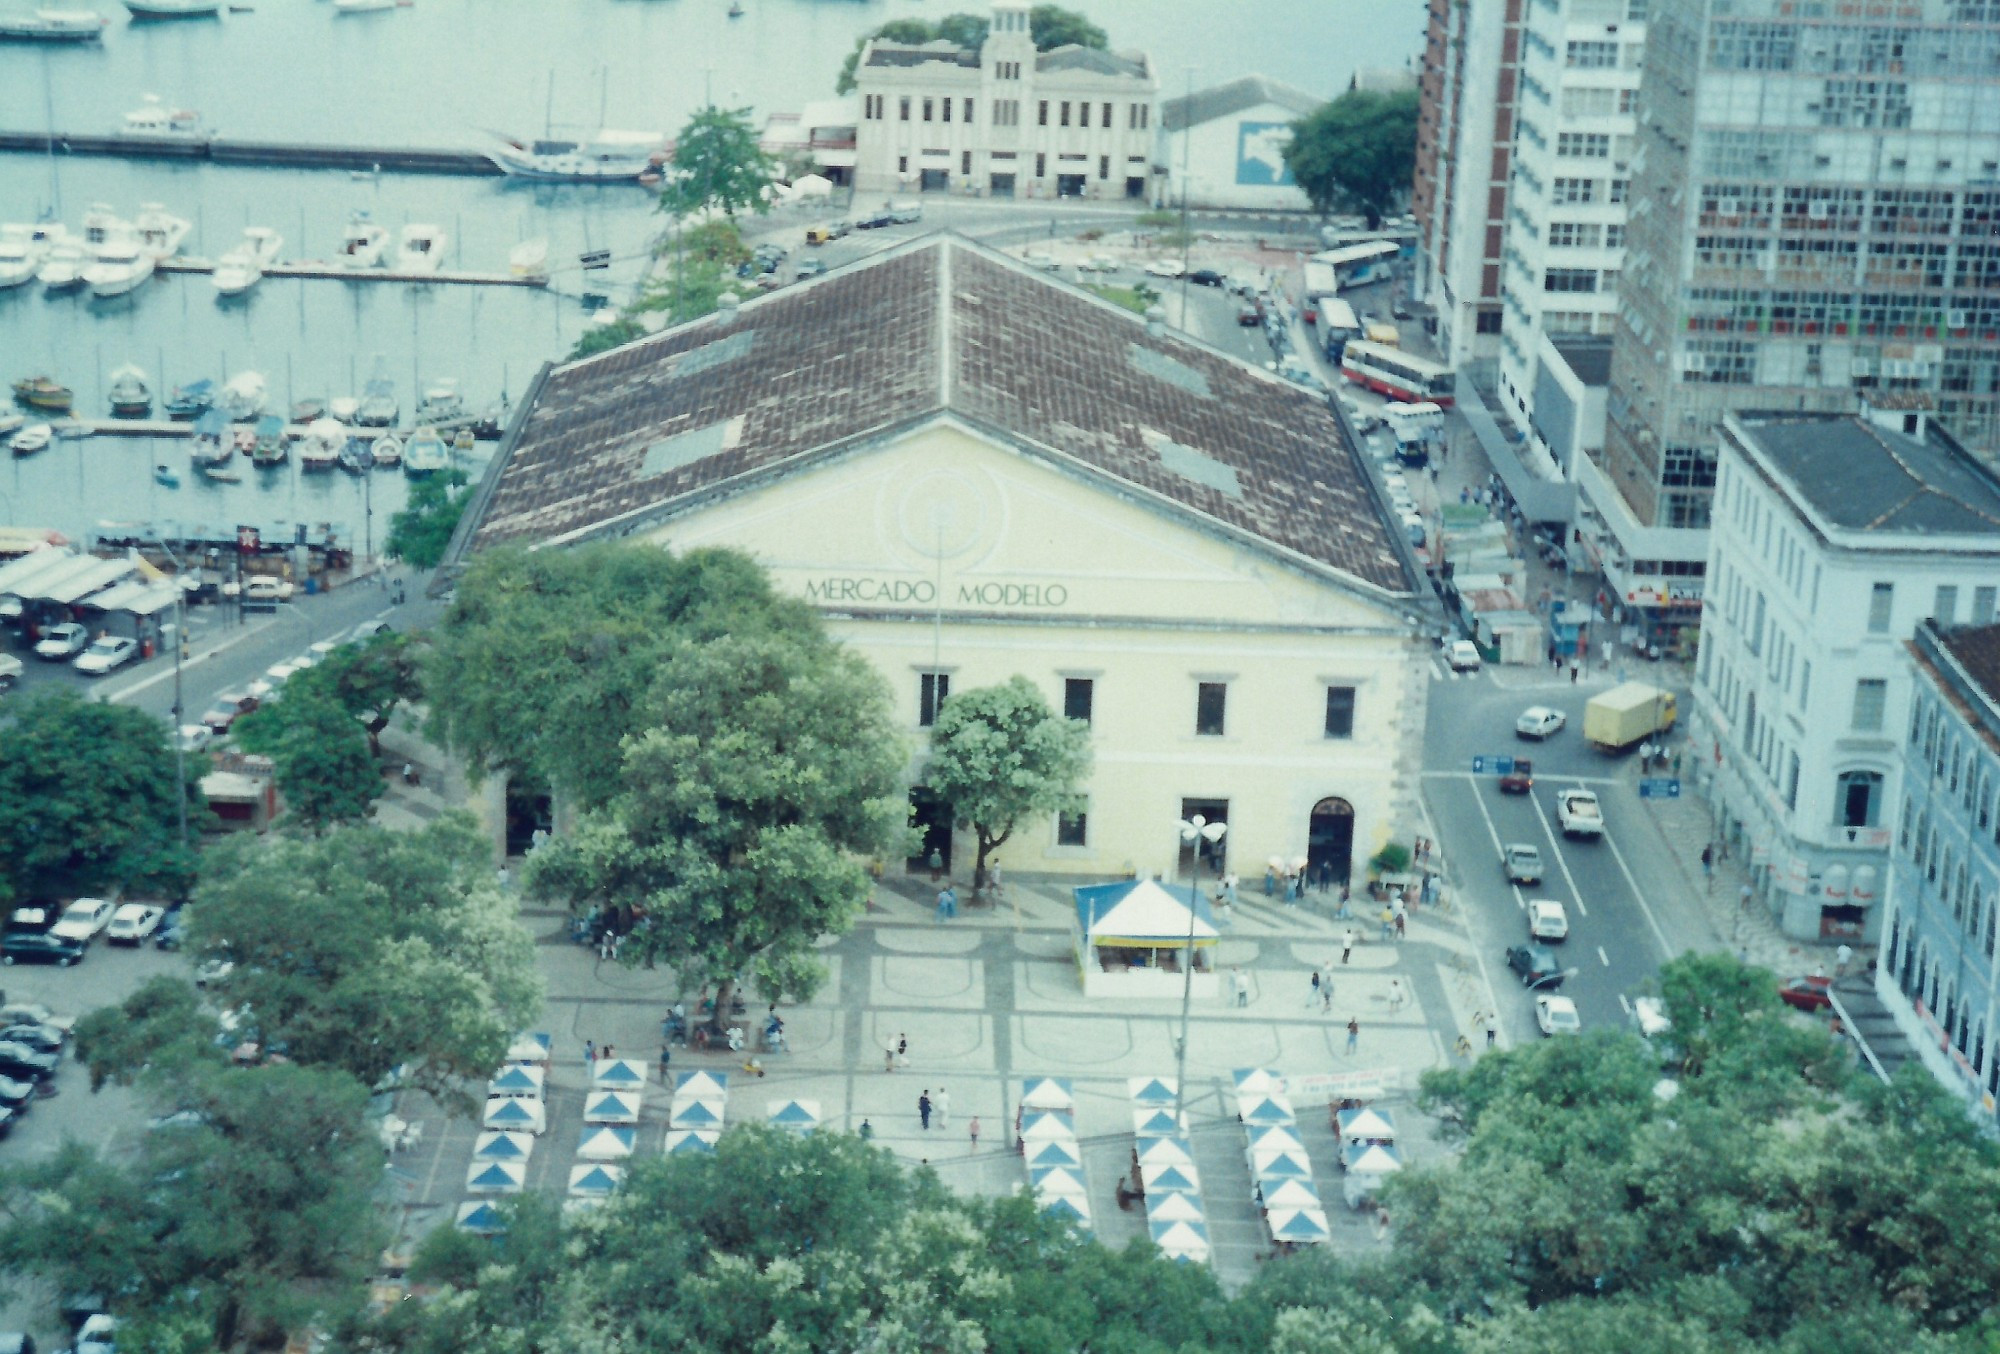 Mercado Modelo, Brazil